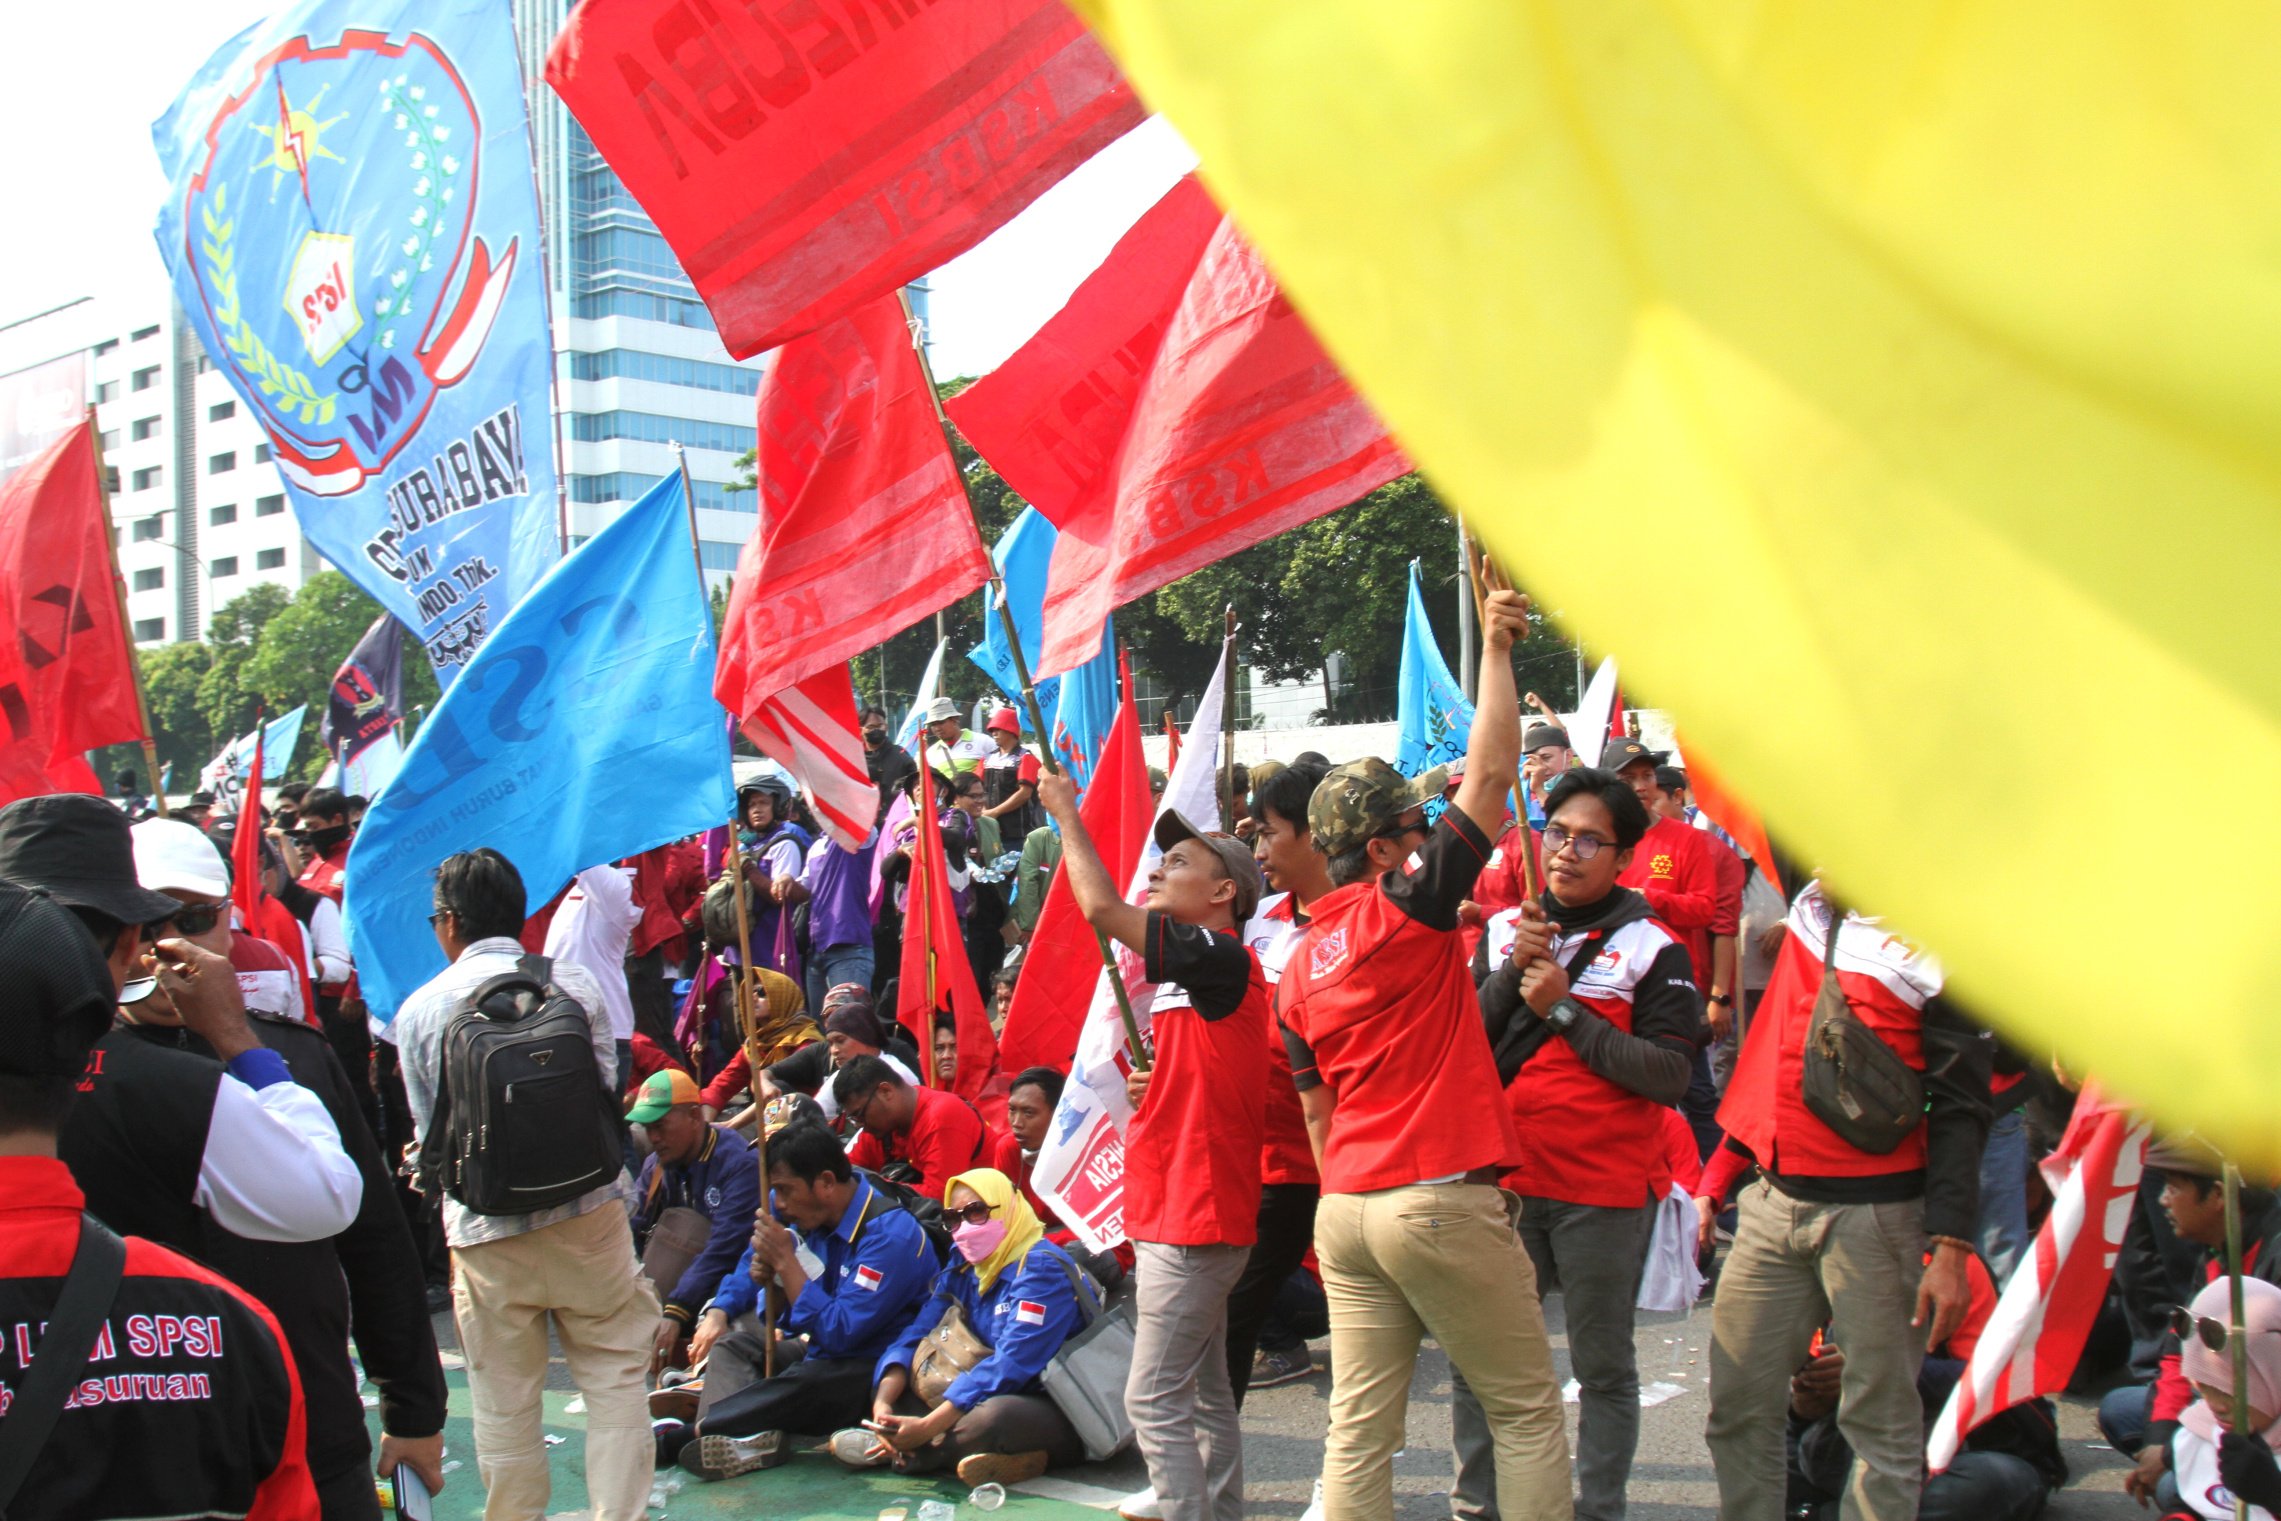 Ribuan buruh yang terdiri dari elemen serikat buruh memadati depan Gedung DPR RI (Ashar/SinPo.id)